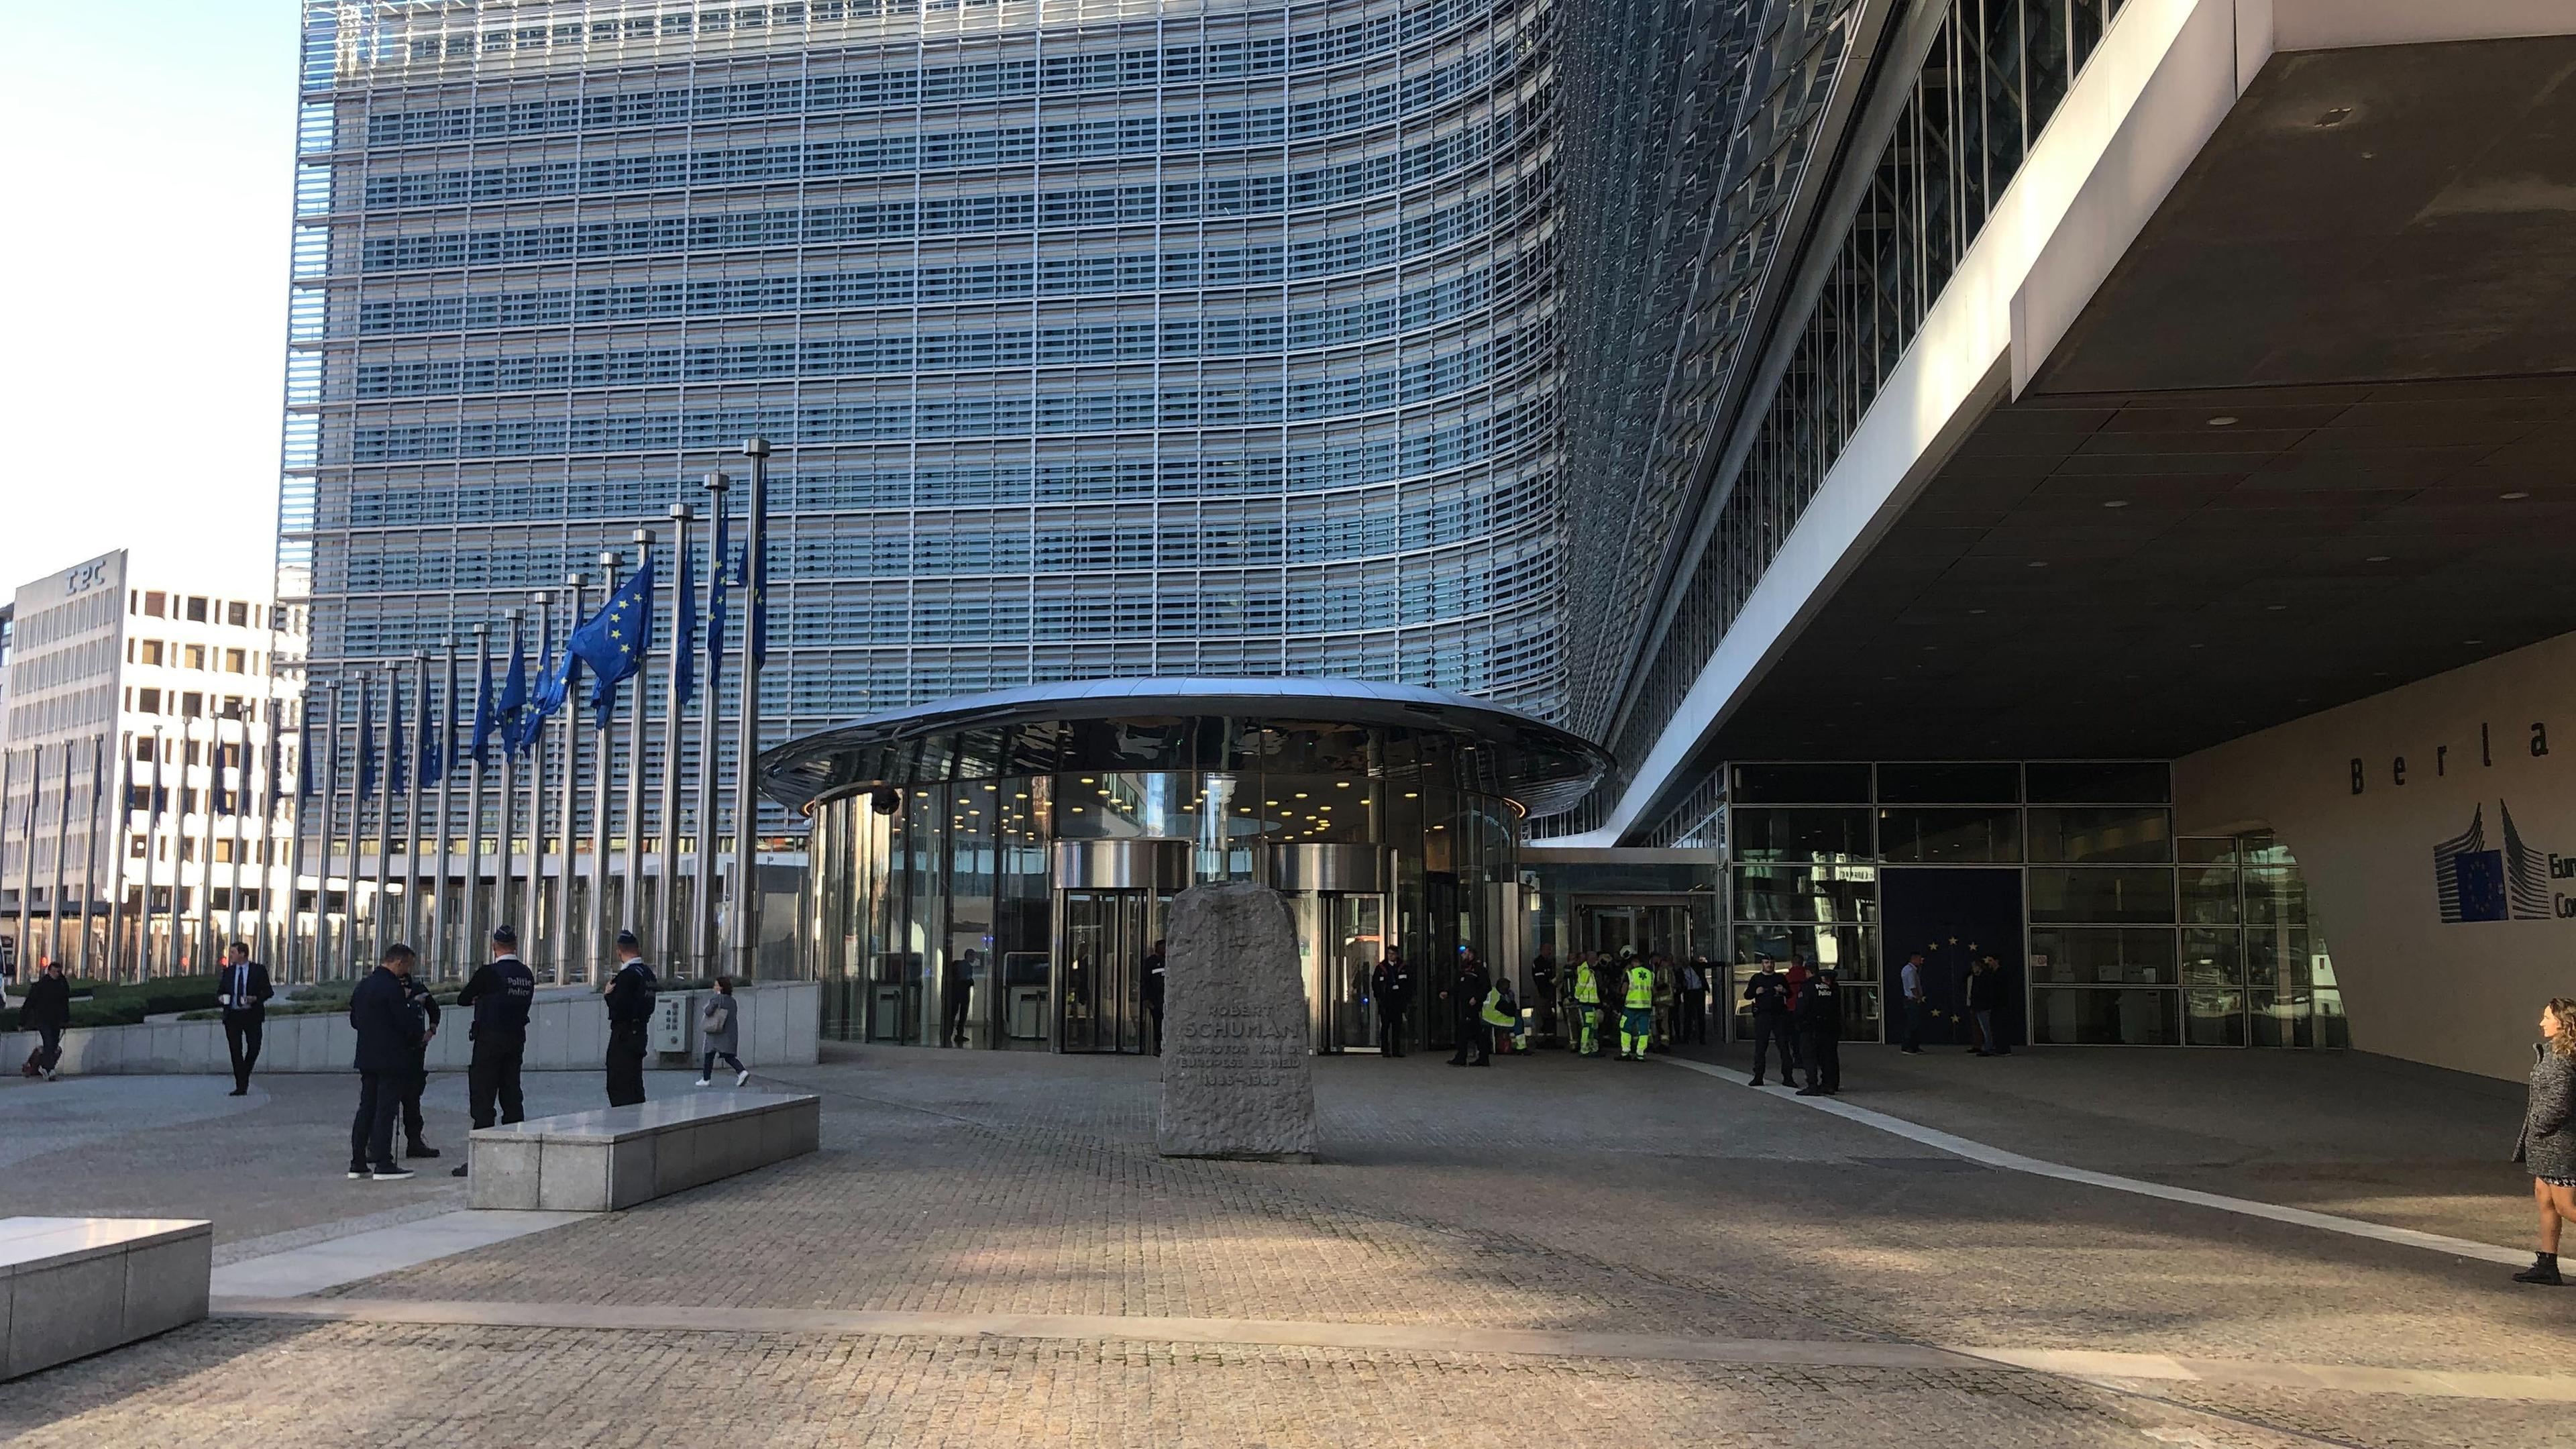 Die Sonne wirft Schatten vor dem modernen Gebäude der EU-Kommission. Wenige Menschen stehen auf dem Platz davor, neben EU-Flaggen.